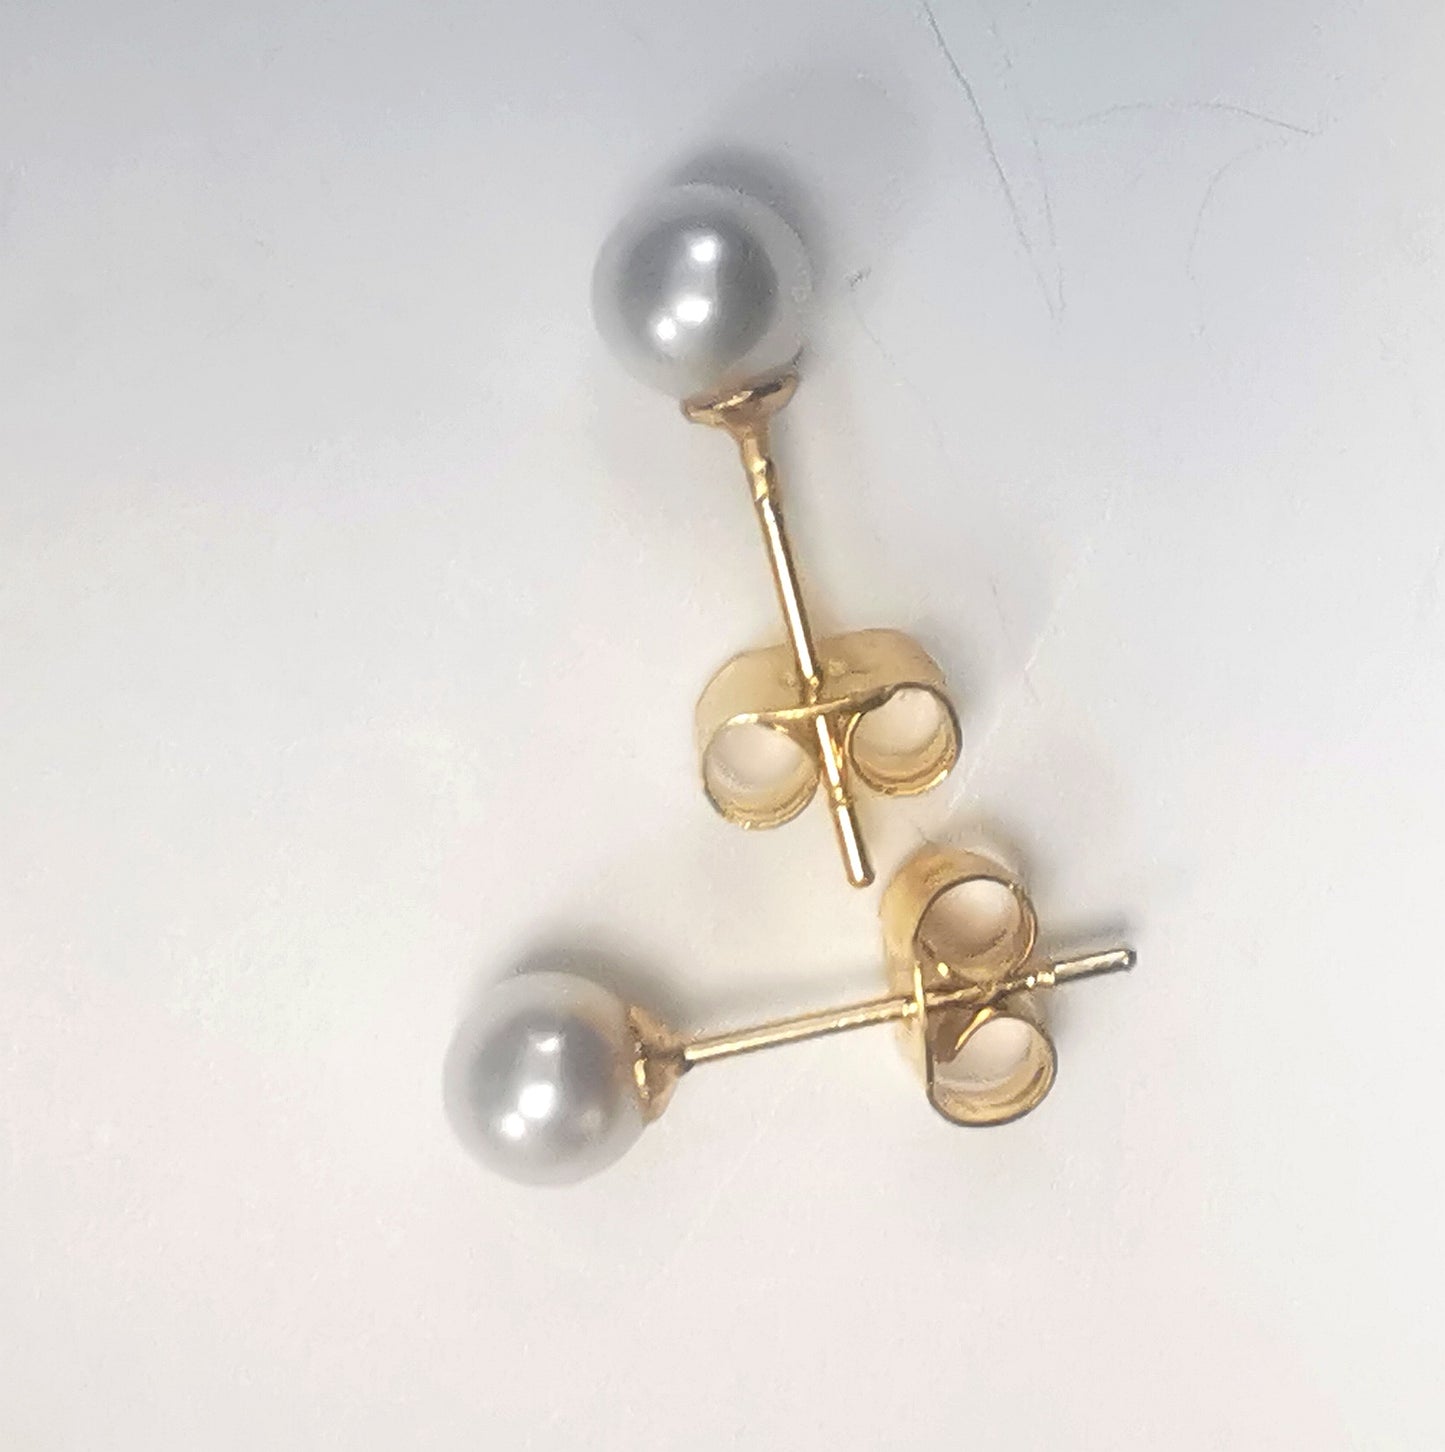 Boucles d'oreilles perles de culture blanches rondes 5mm montées sur clous plaqués or. Présentées perpendiculairement, celle du bas horizontale perle à gauche, celle du haut verticale perle en haut, sur fond blanc. Vue de dessus.